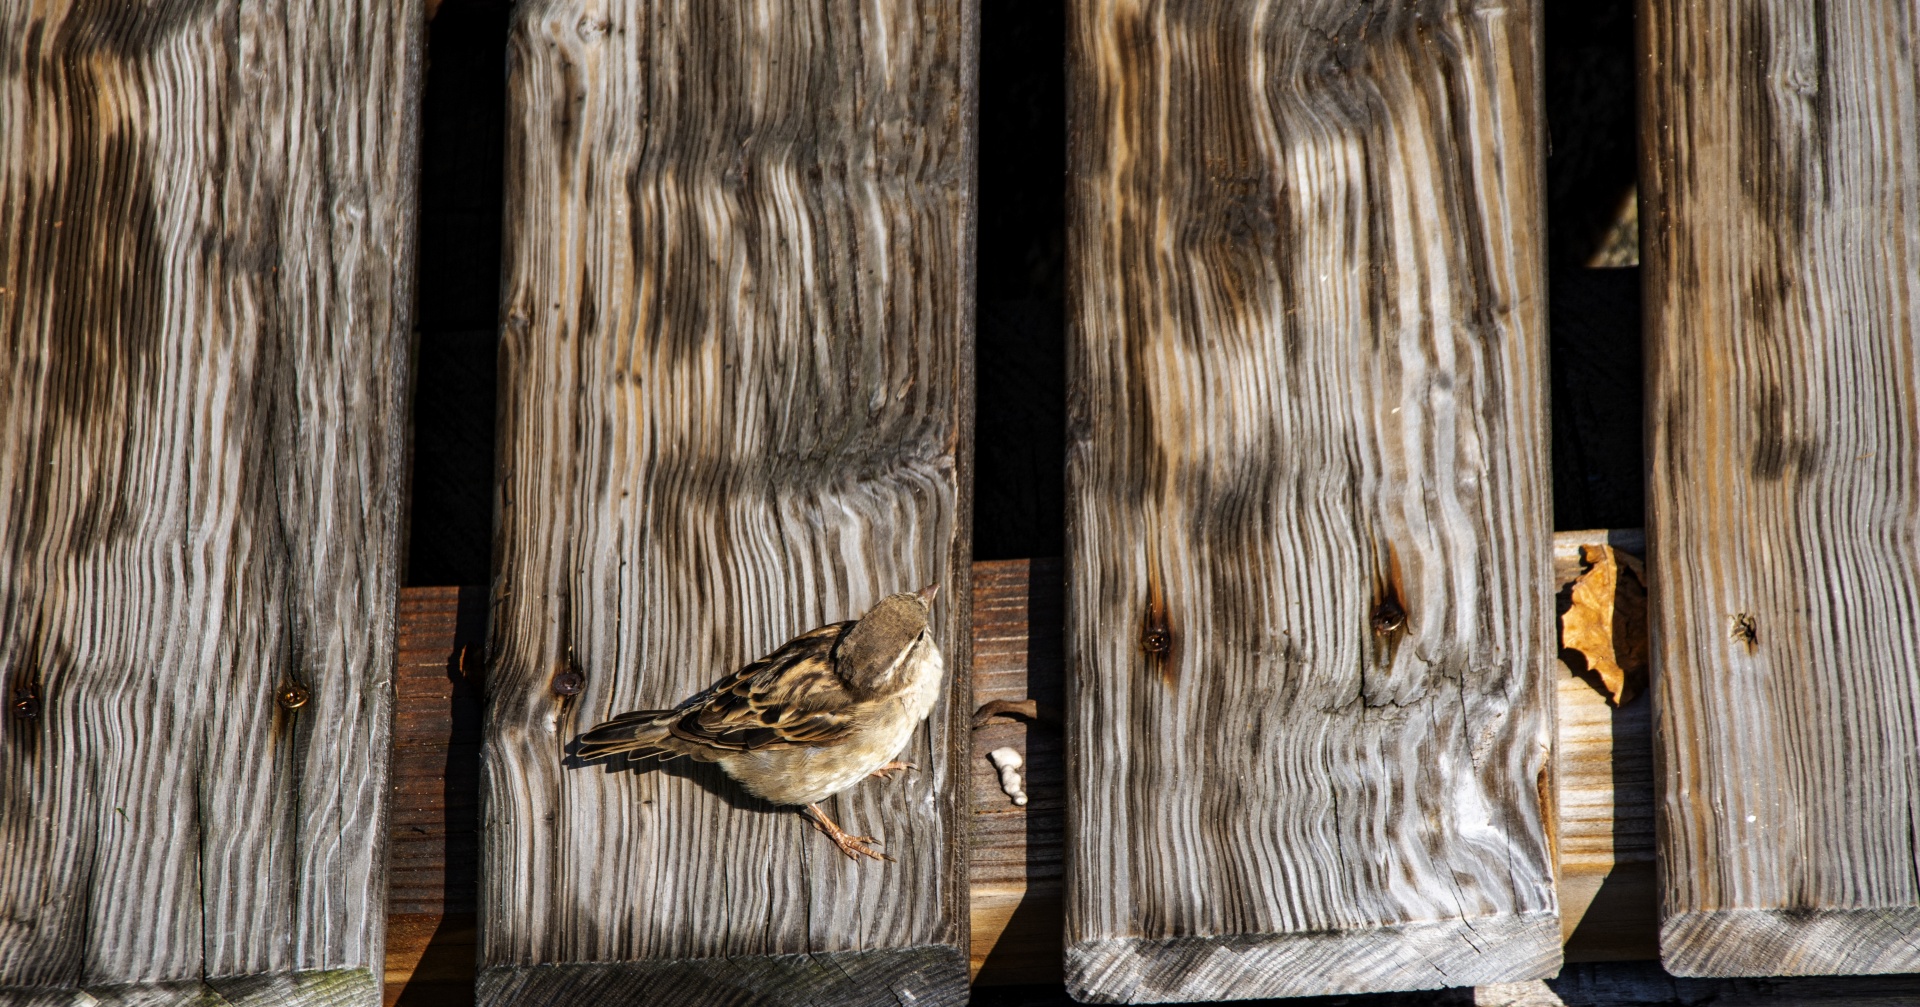 Sparrow On The Deck